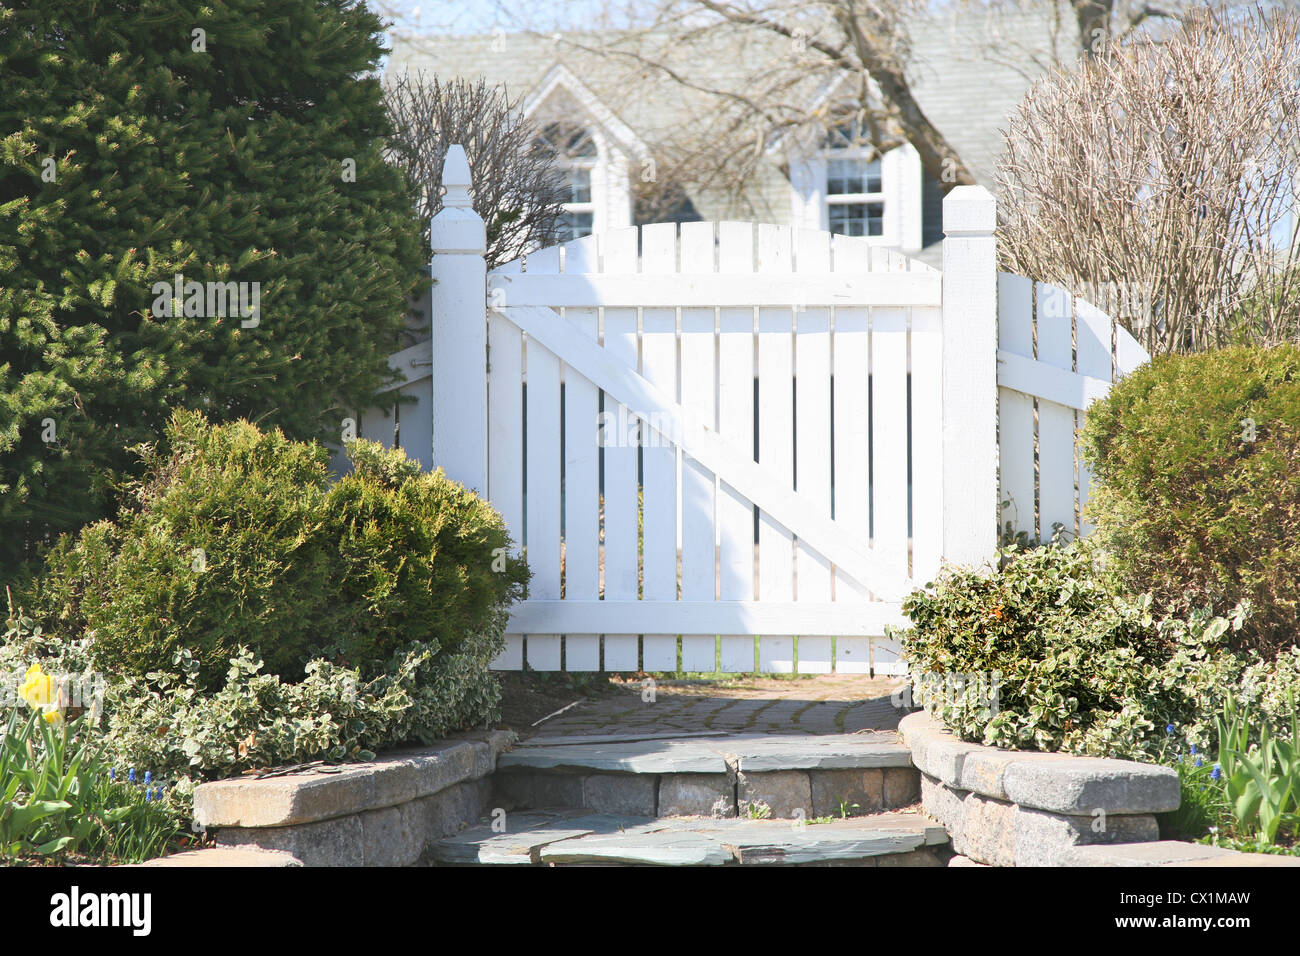 Un cancello del giardino in una zona residenziale spring garden. Foto Stock